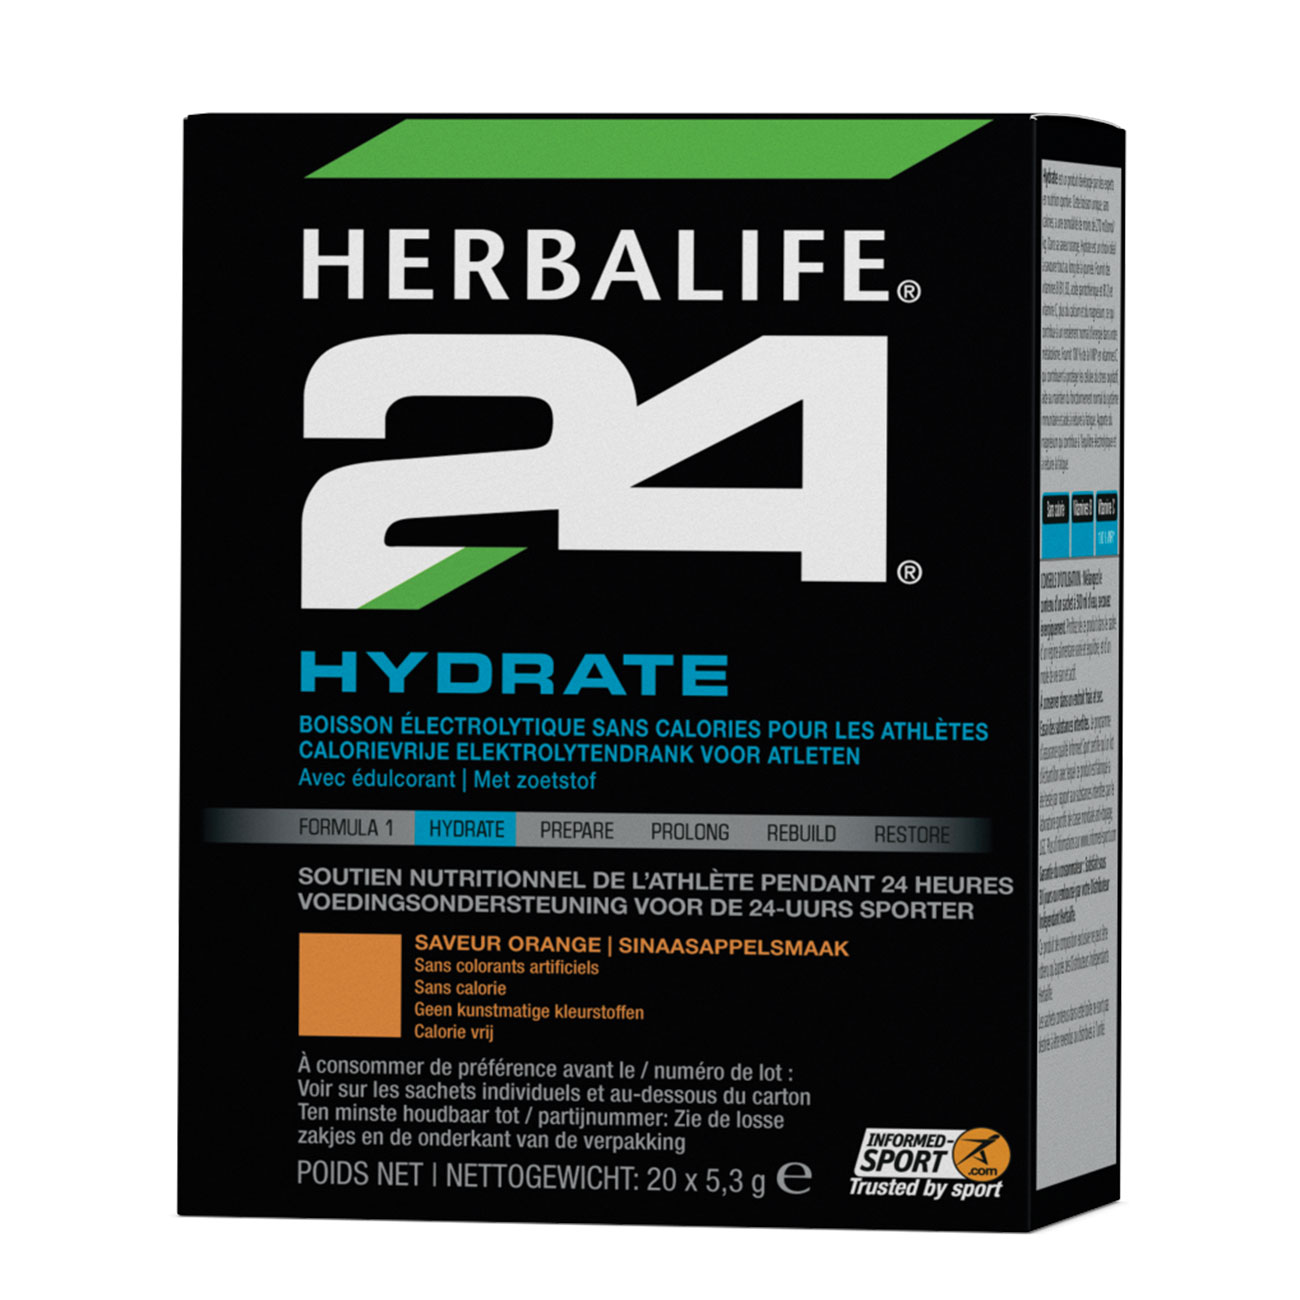 Herbalife24® Hydrate elektrolytendrank sinaasappelsmaak product shot